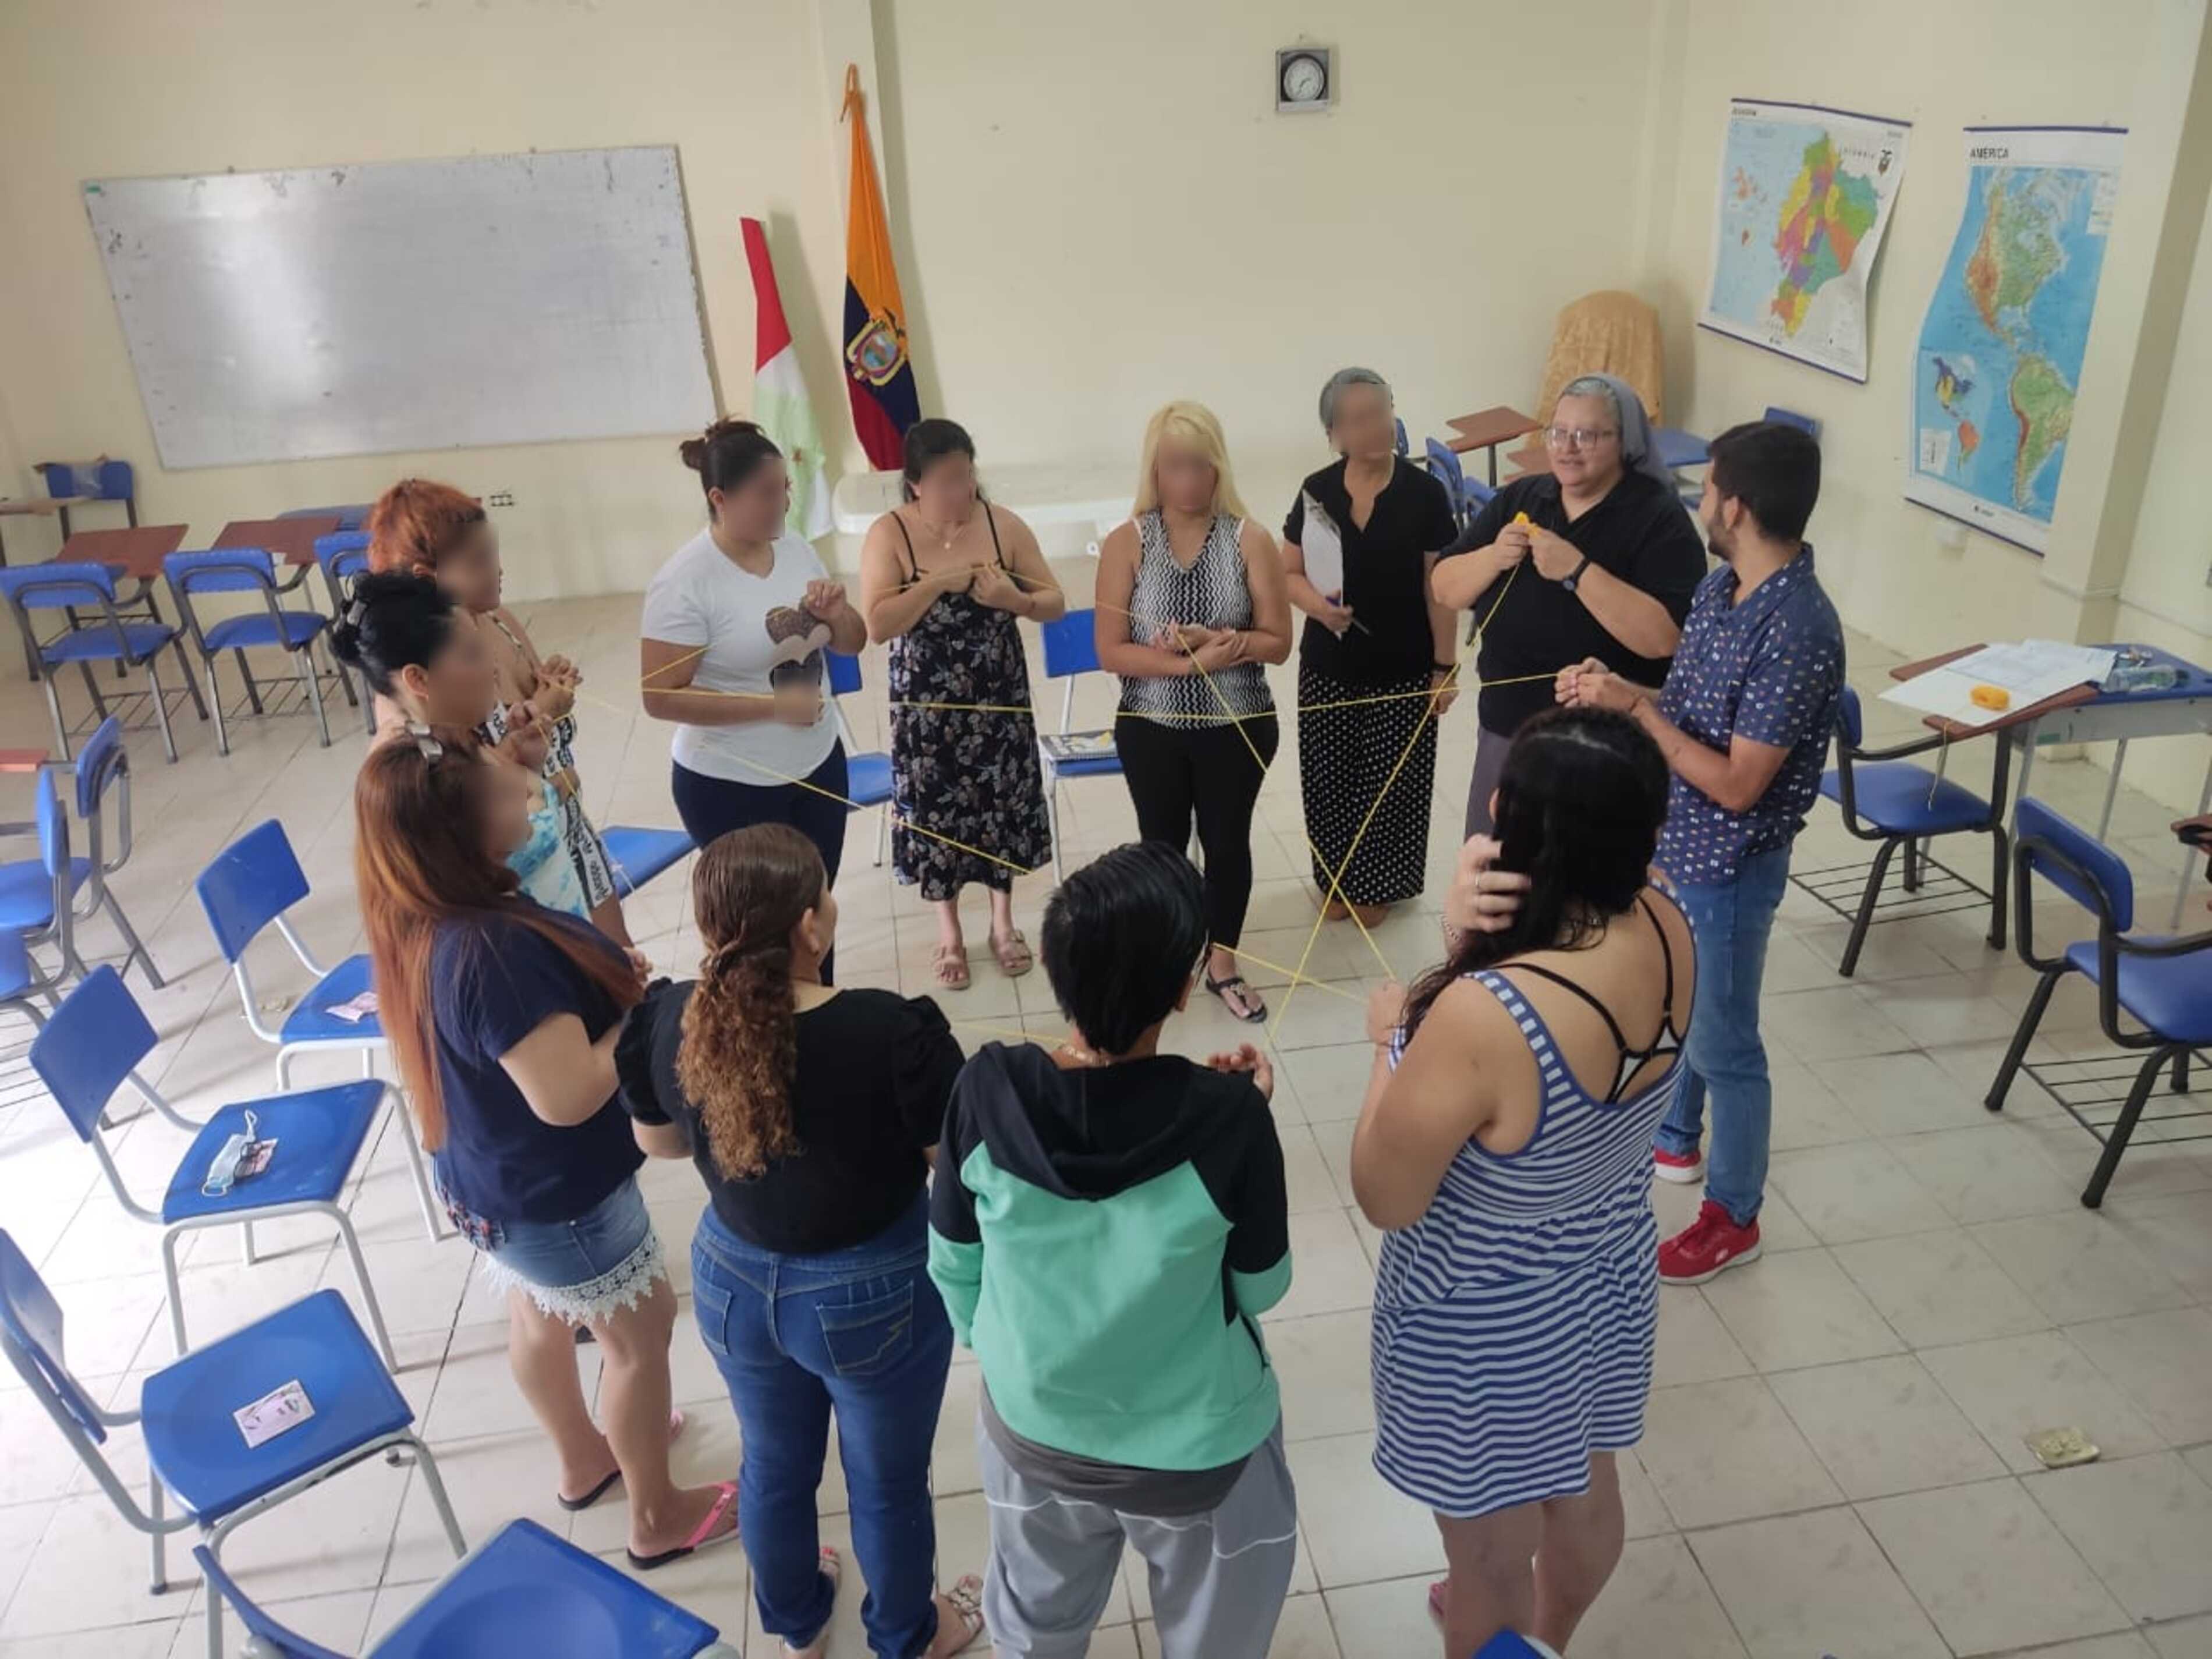 A group of women participate in the School of Reconciliation that Sr. Maritza Rolón Cevallos develops in Regional Center No. 1, a women's prison in Portoviejo, Ecuador. (Courtesy of Maritza Rolón Cevallos)